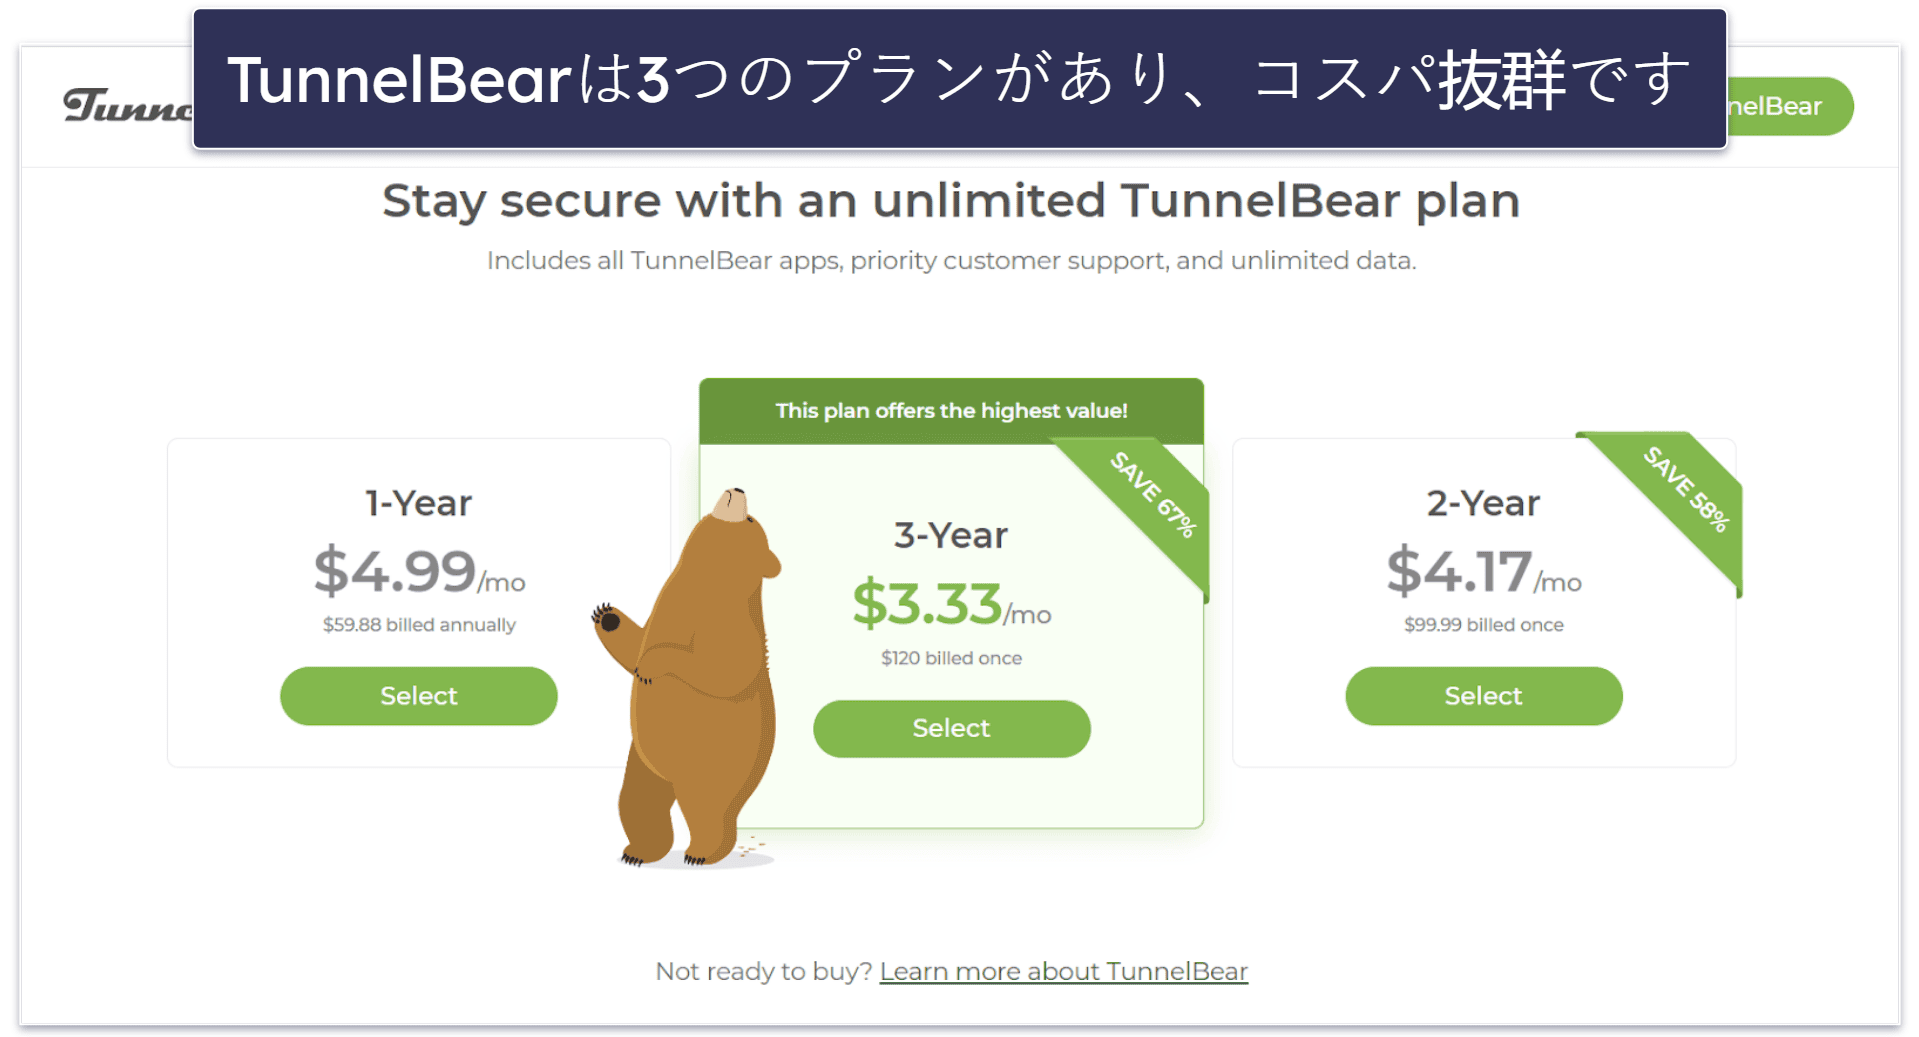 8. TunnelBear：使い勝手が良く、楽しいデザイン